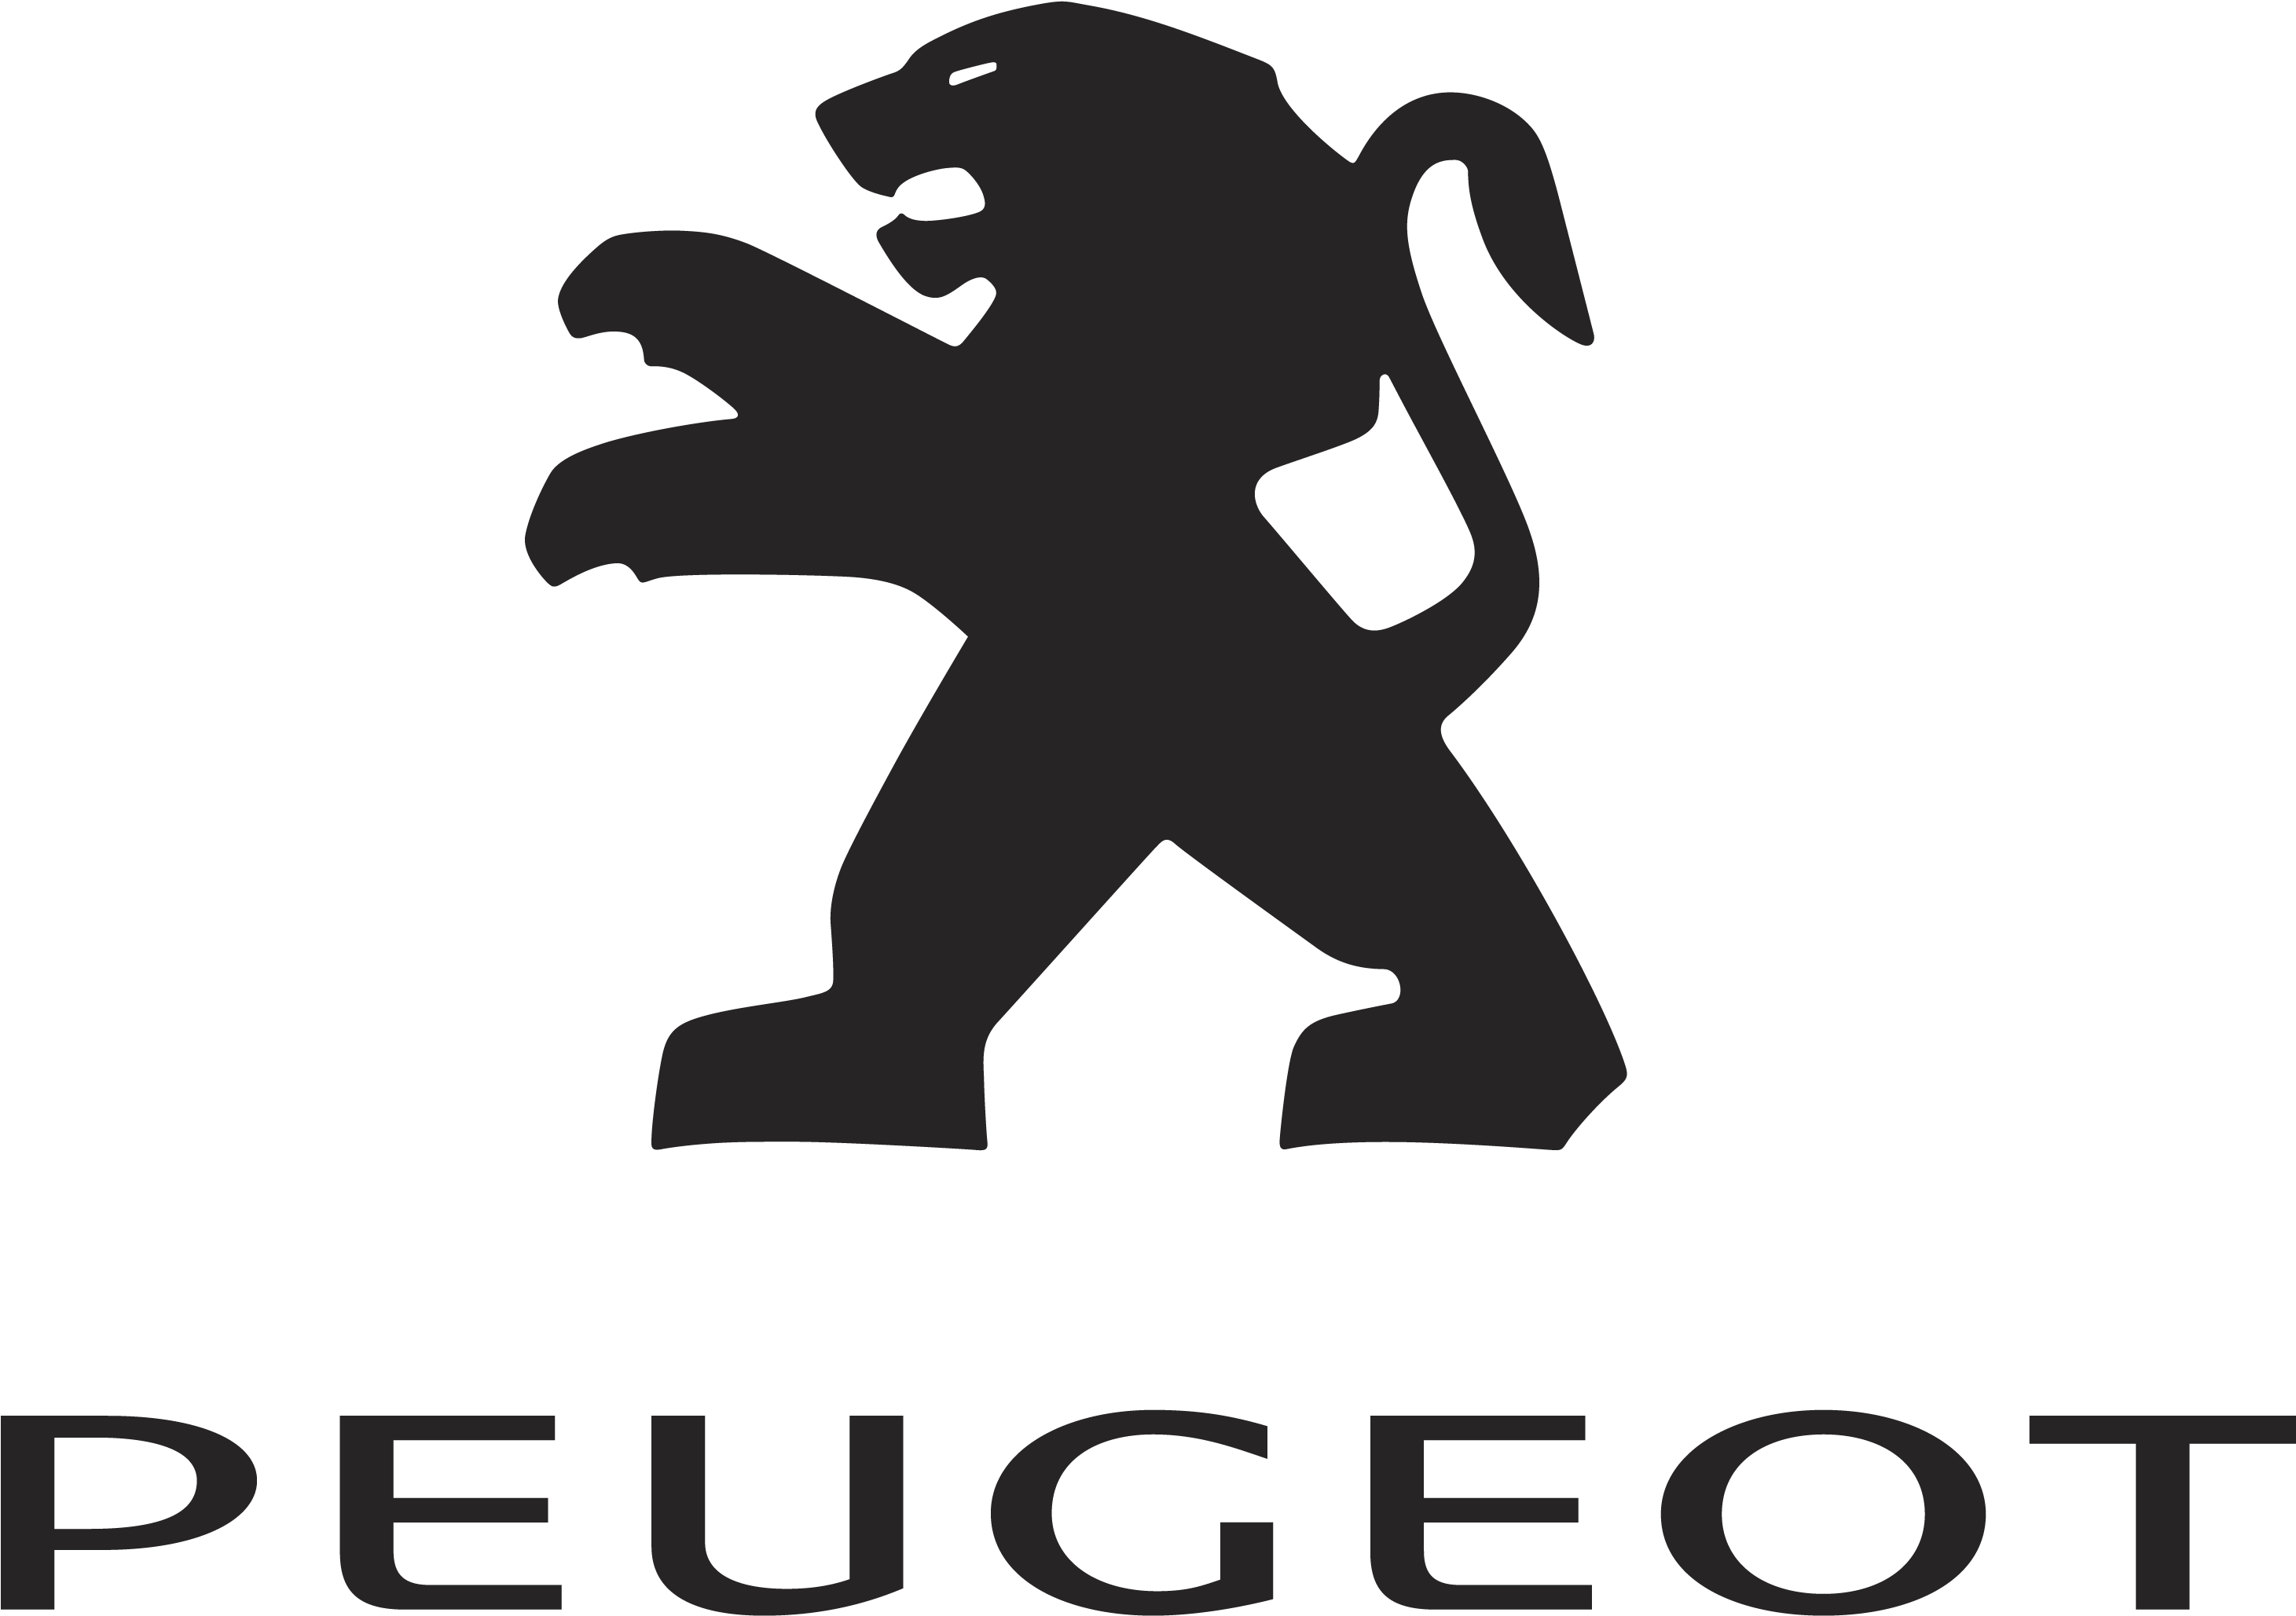 Peugeot - peugeot